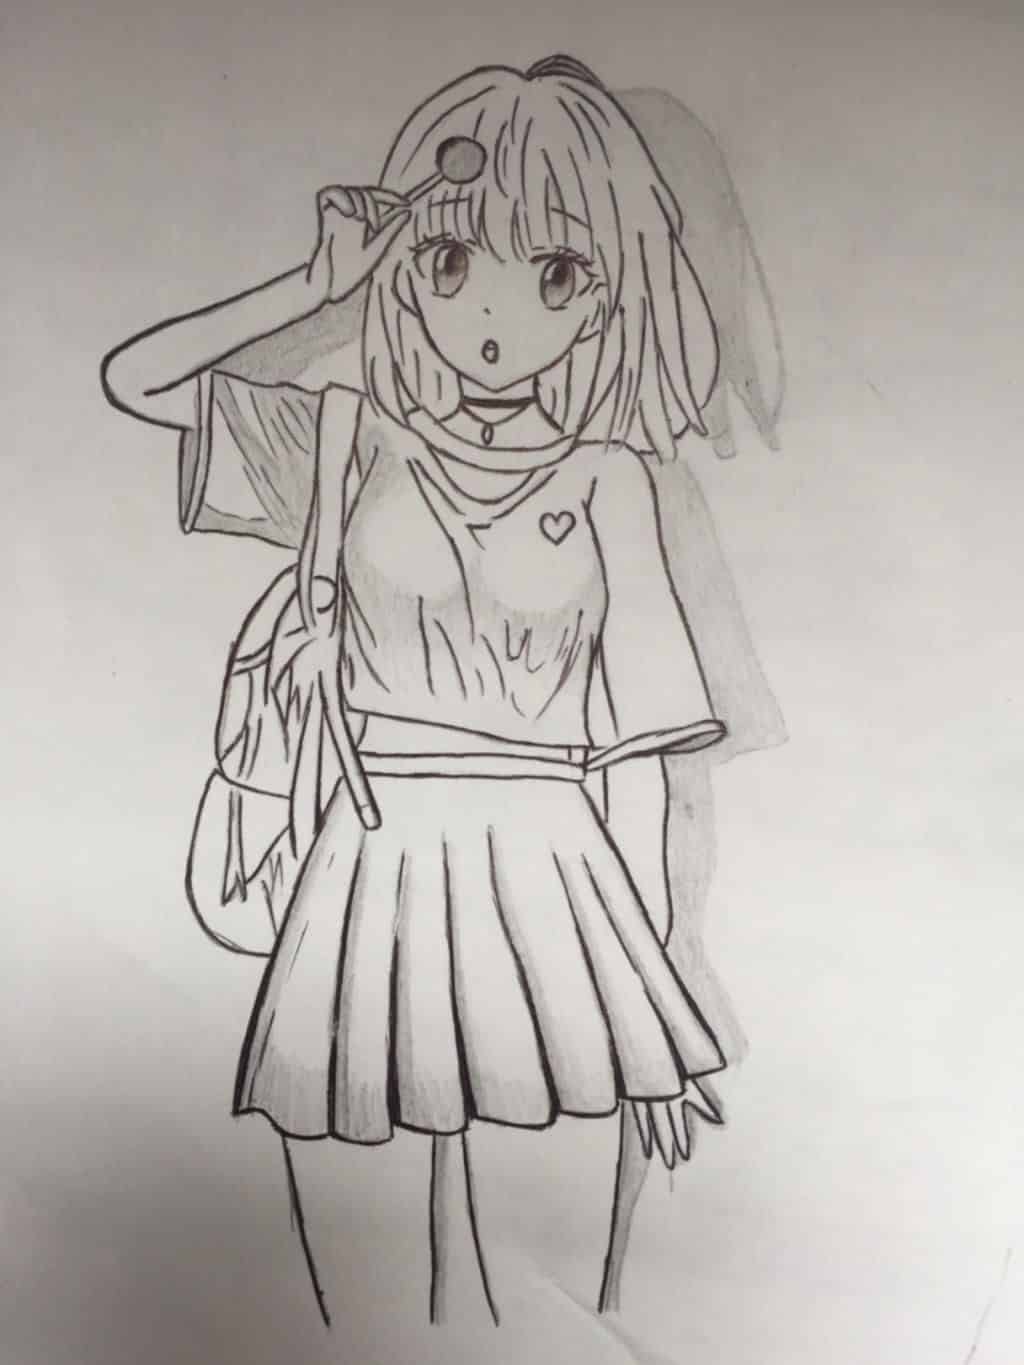 Cách vẽ cô gái anime đơn giản 93  Vẽ cô gái bằng bút chì dễ dàng  YouTube